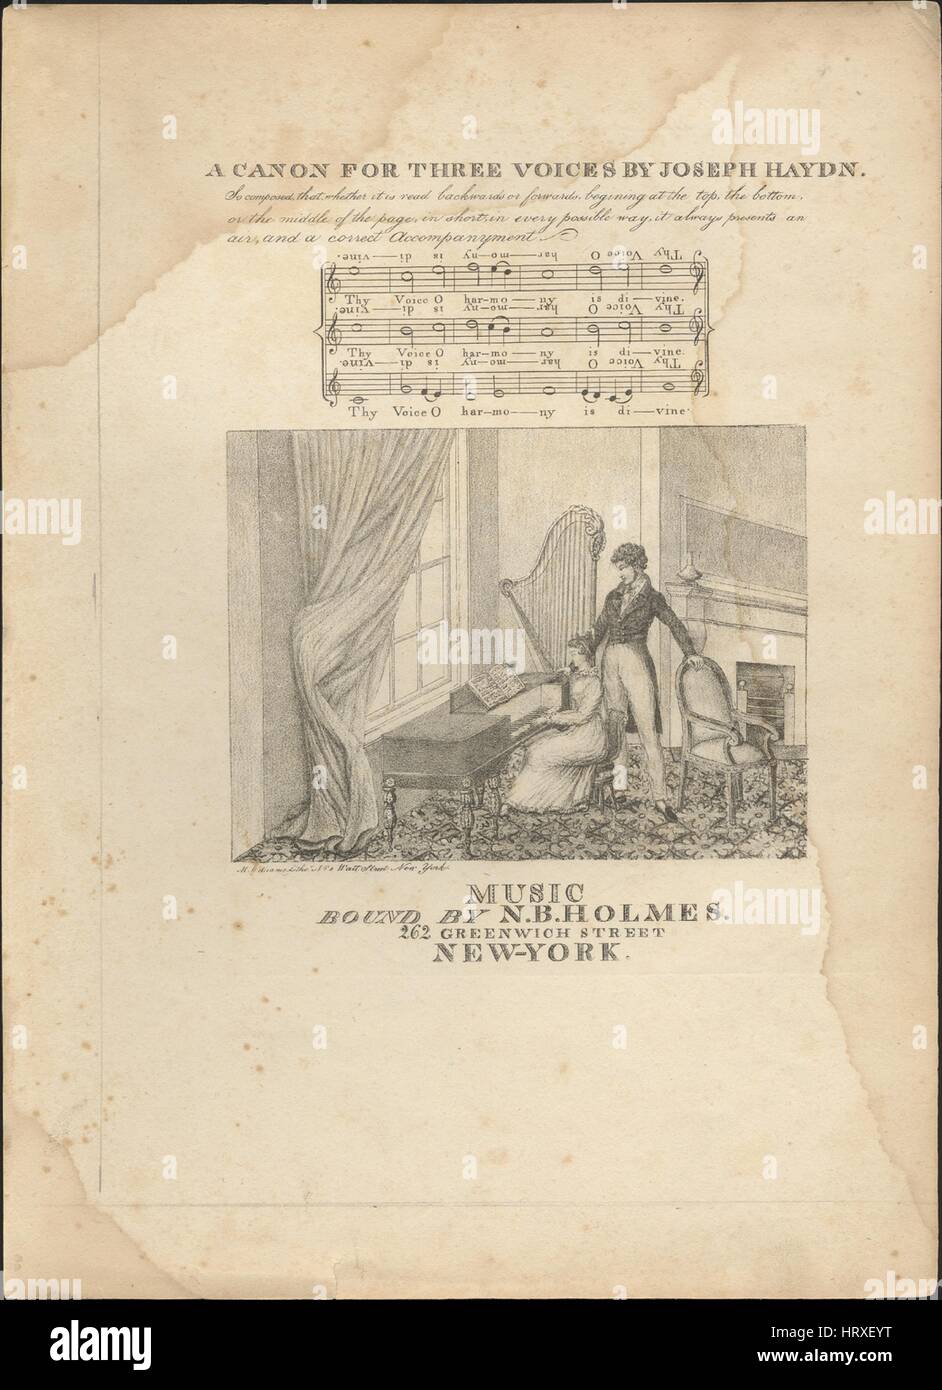 Noten-Cover-Bild des Songs "A Kanon für drei Stimmen", mit ursprünglichen Autorschaft Noten lesen "Von Joseph Haydn So zusammengesetzt, dass es rückwärts gelesen oder weiterleitet, beginnend an der Spitze, der Unterseite, von der Mitte der Seite, kurz gesagt, in jeder möglichen Weise immer einen Hauch und eine korrekte aktivierende [sic] dargestellt", USA, 1900. Der Herausgeber ist aufgeführt, wie "Gebunden von N.B. Holmes, 262 Greenwich Street", die Form der Komposition "nur ist" die Instrumentierung ist "Klavier und Stimme [?]", die erste Zeile liest "None" und der Abbildung Künstler wird als aufgeführt "M. Willi Stockfoto